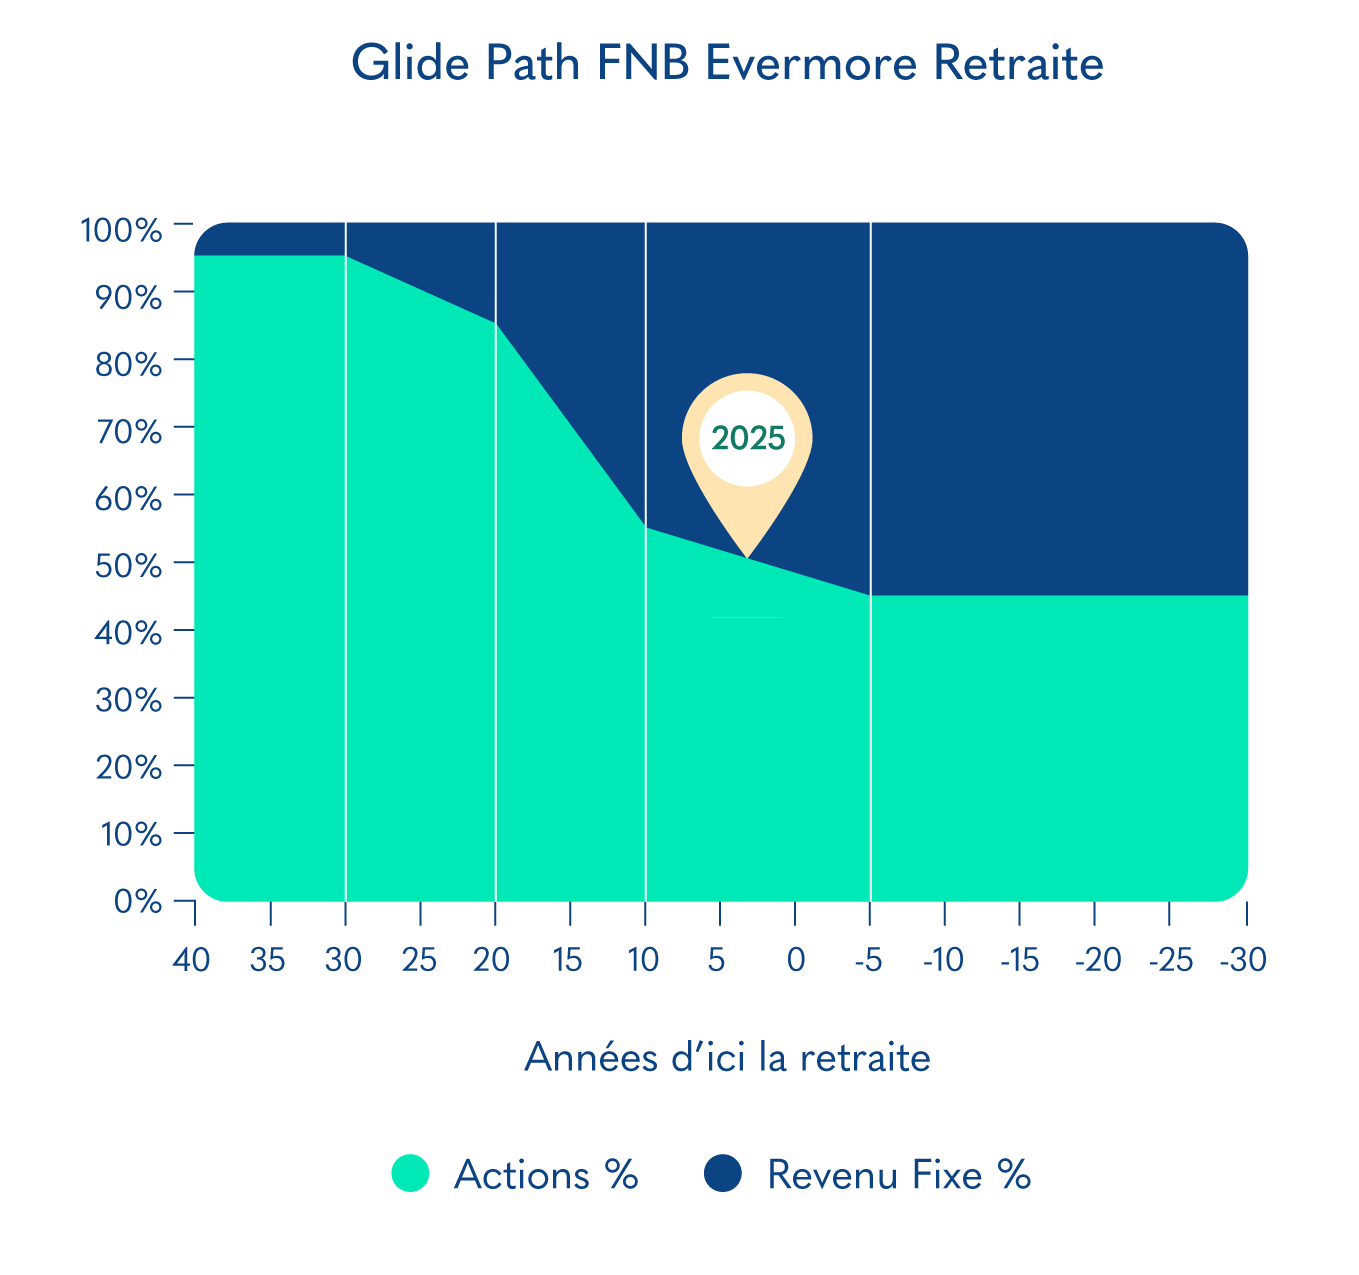 Glide Path FNB Evermore Retraite 2025